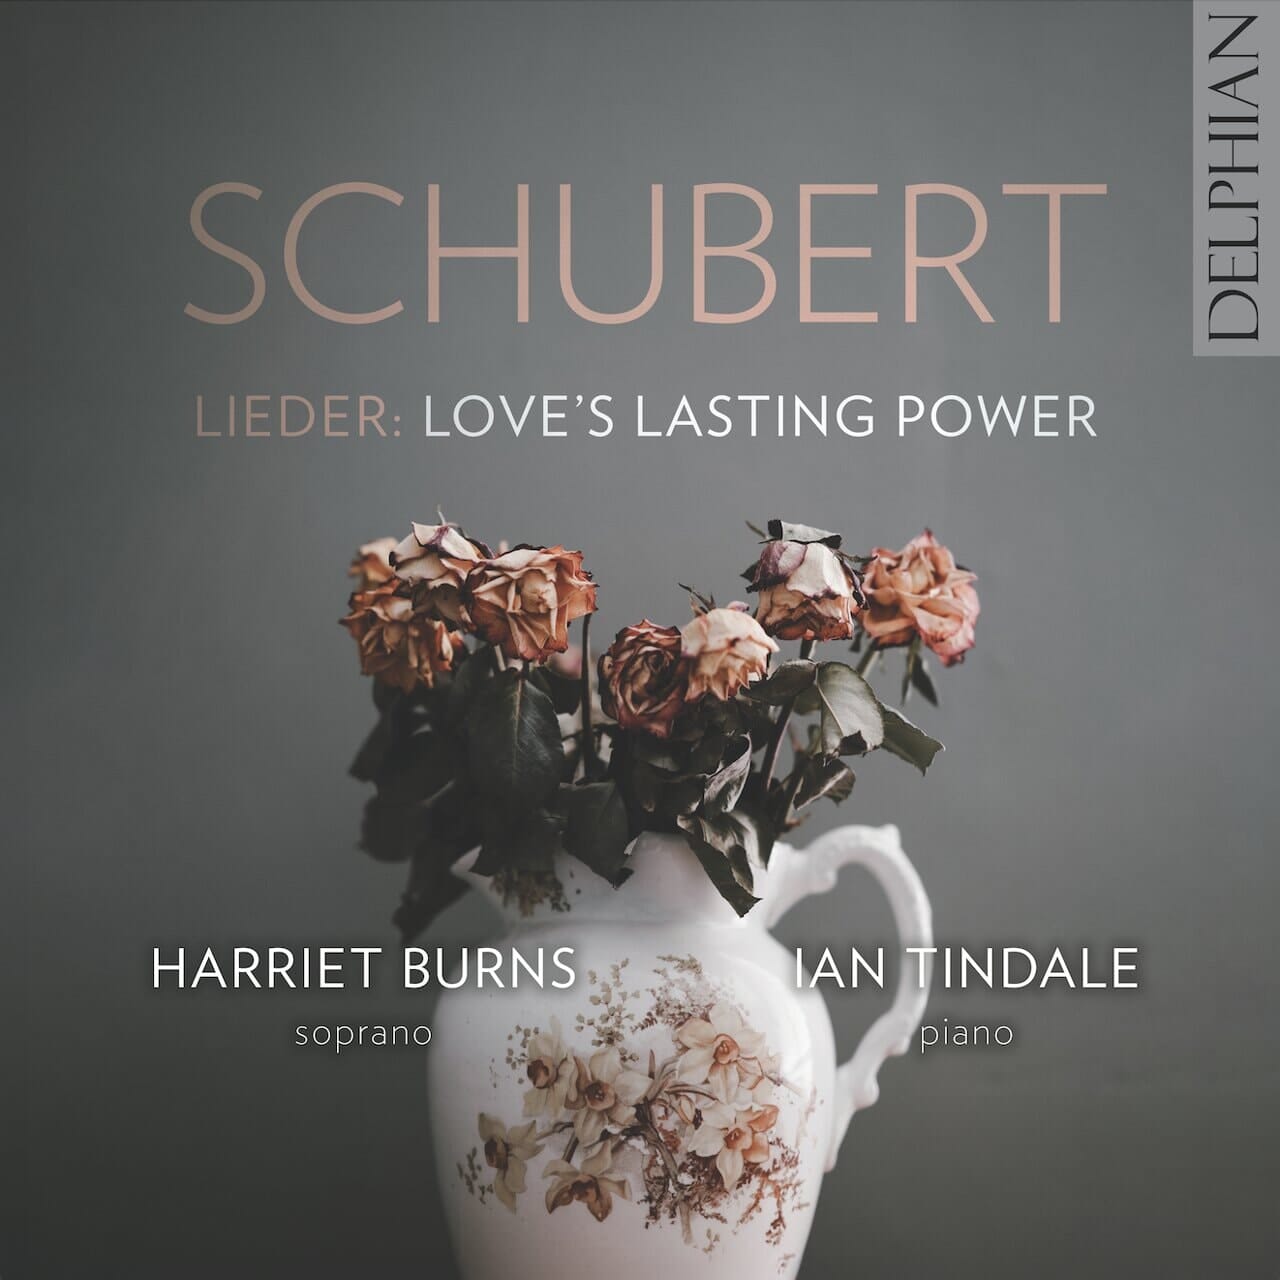 Schubert Lieder: Love’s Lasting Power